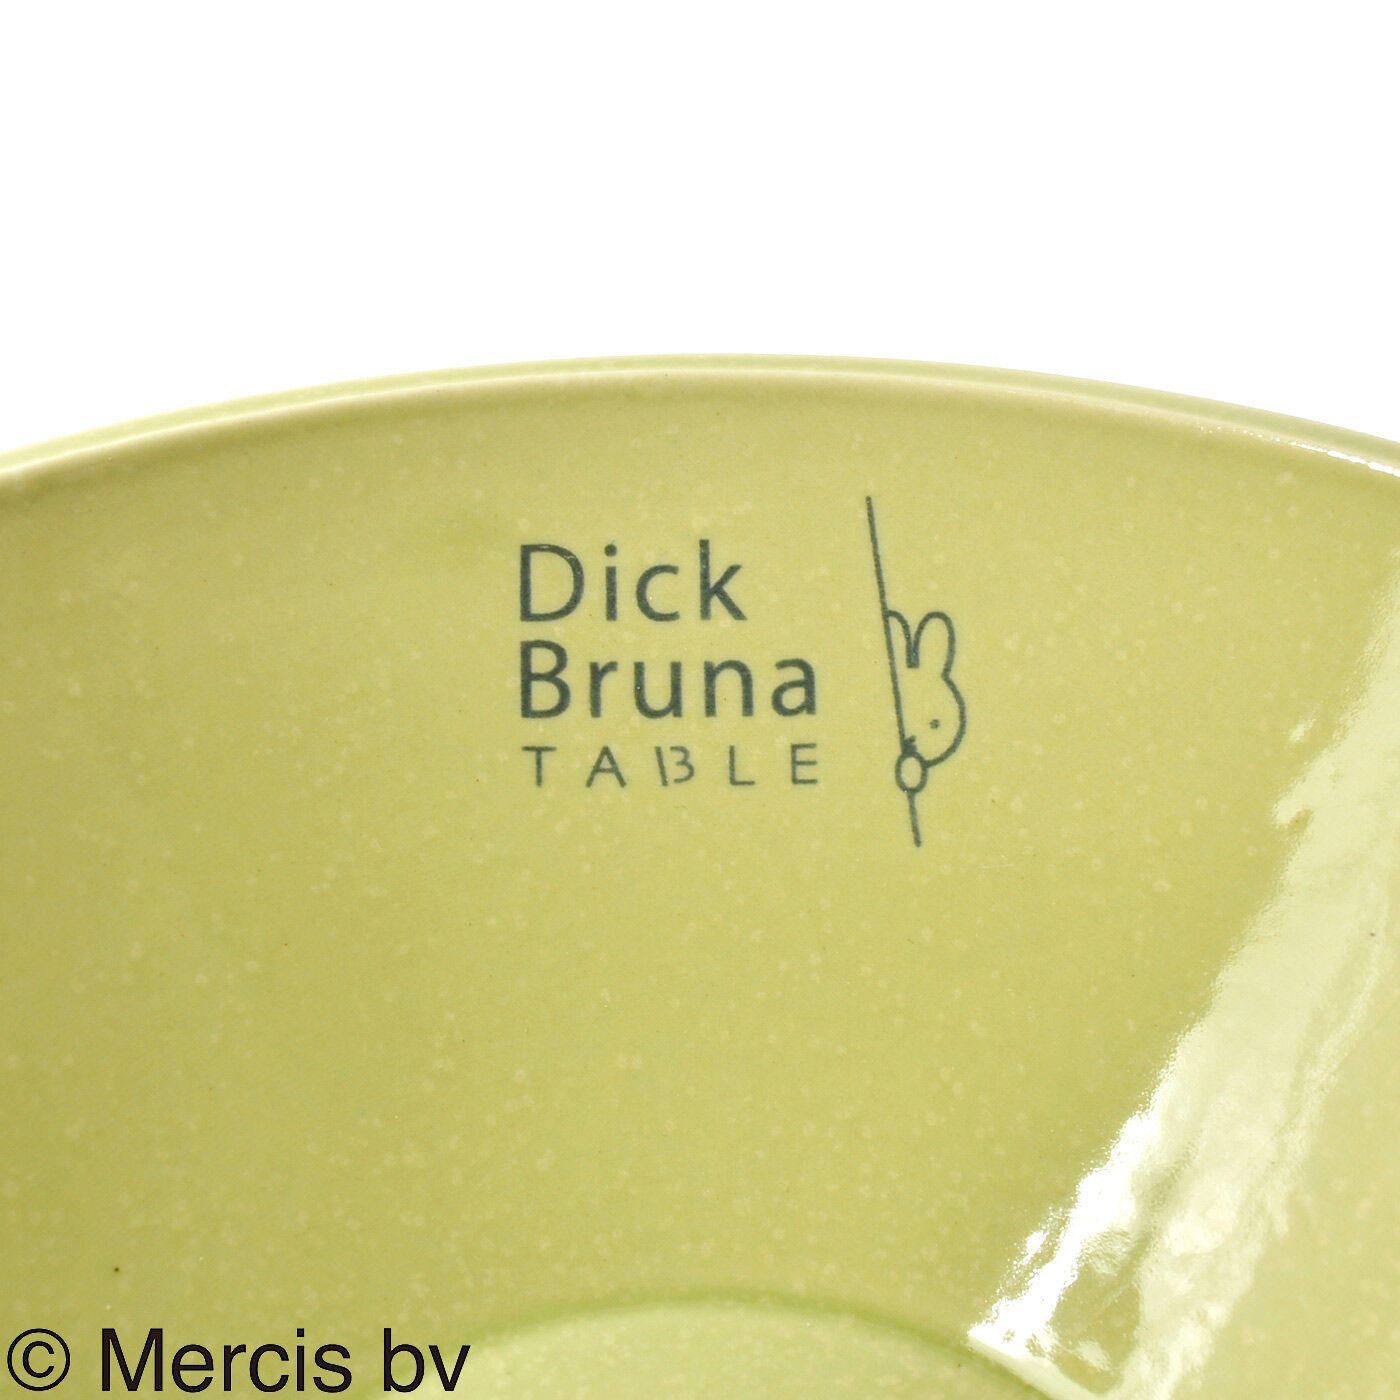 ディック・ブルーナ テーブル|Dick Bruna TABLE  テーブルを華やかに彩るボウルの会|ロゴが入っています